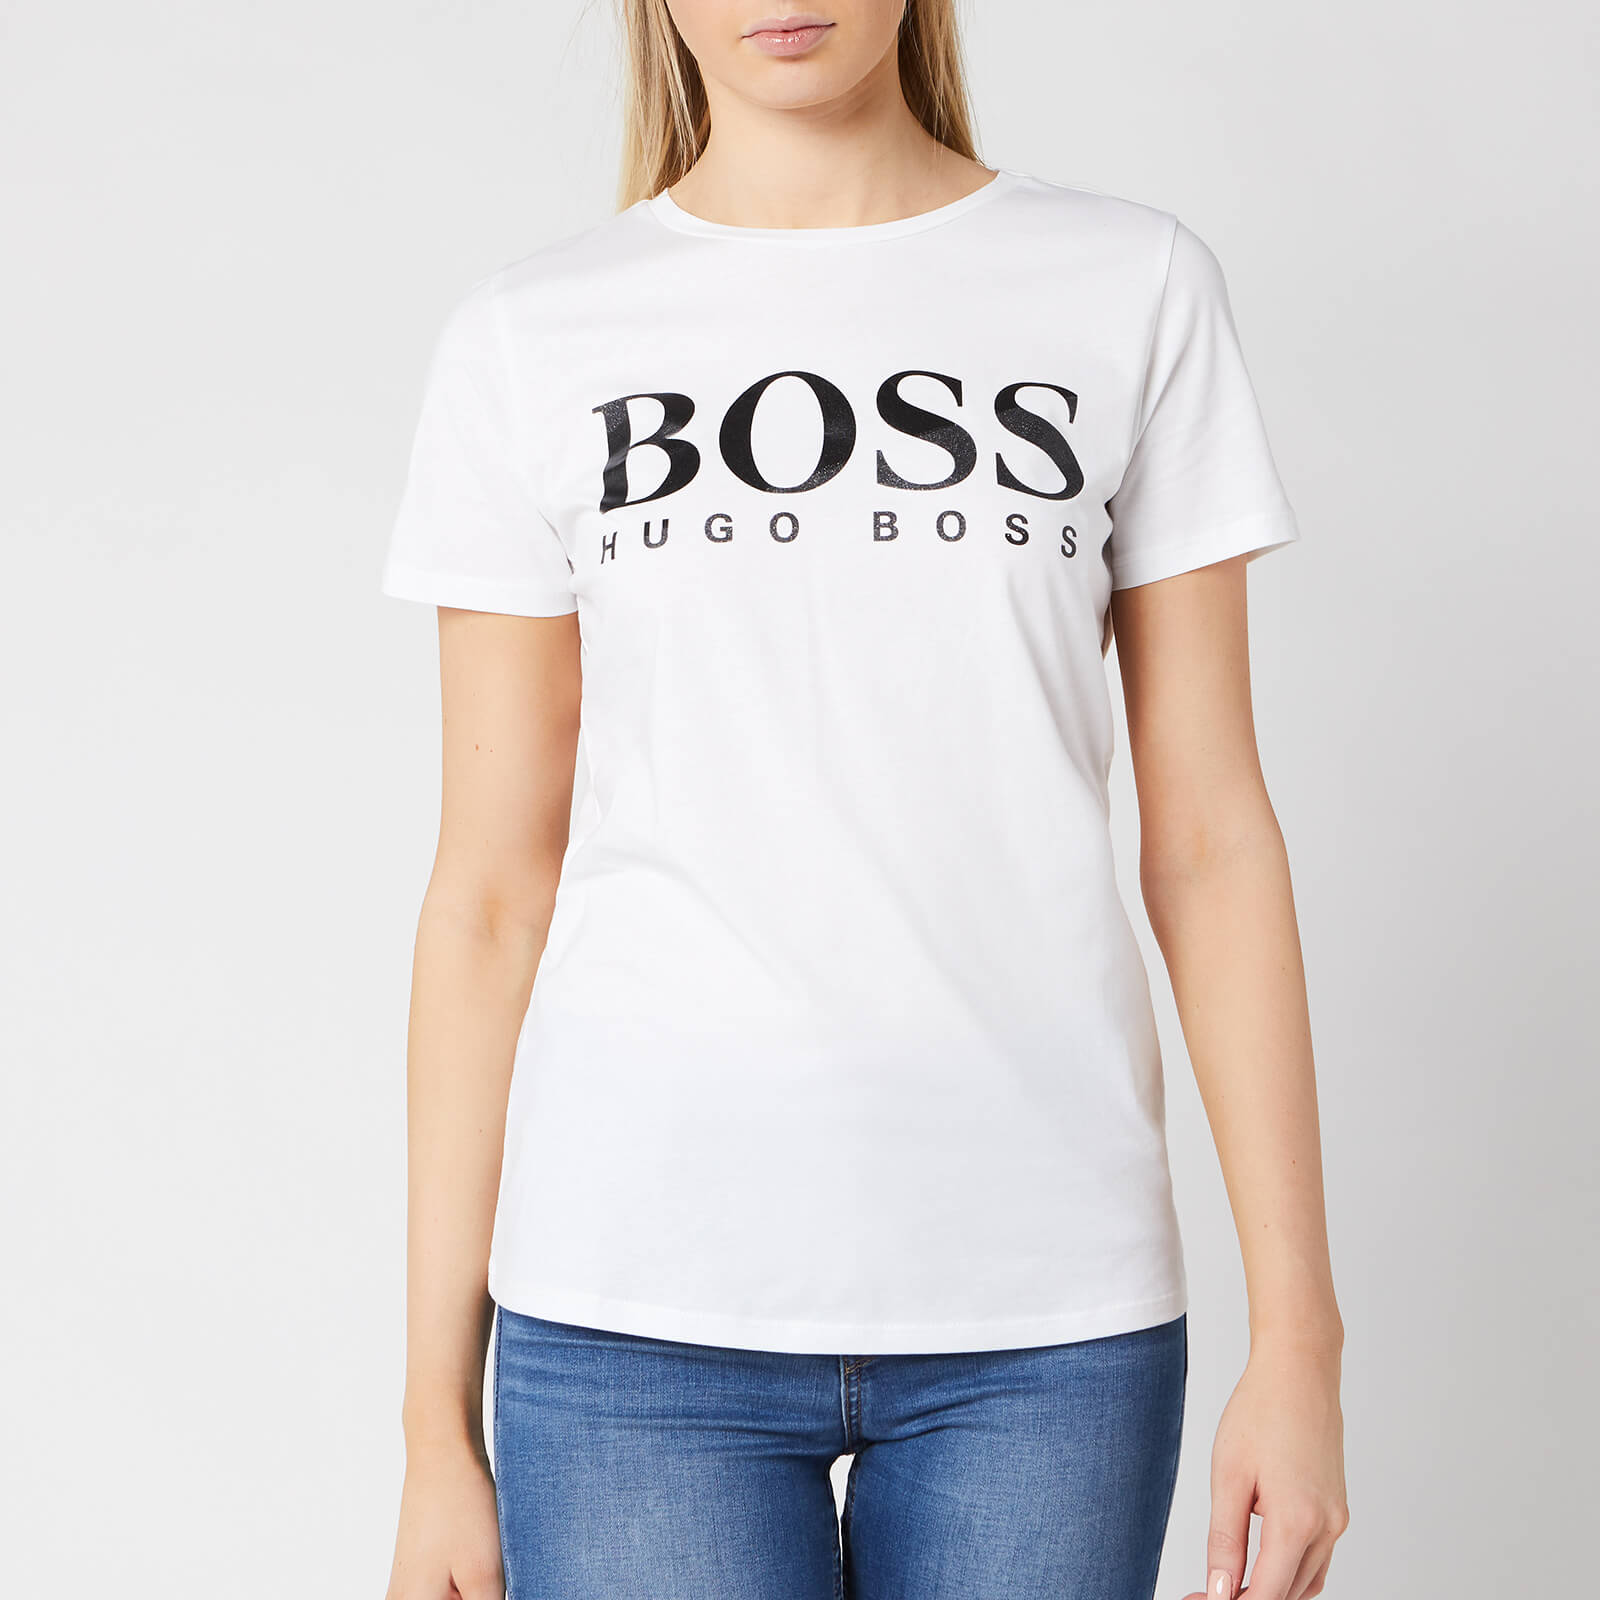 boss women's t shirt Cheaper Than 